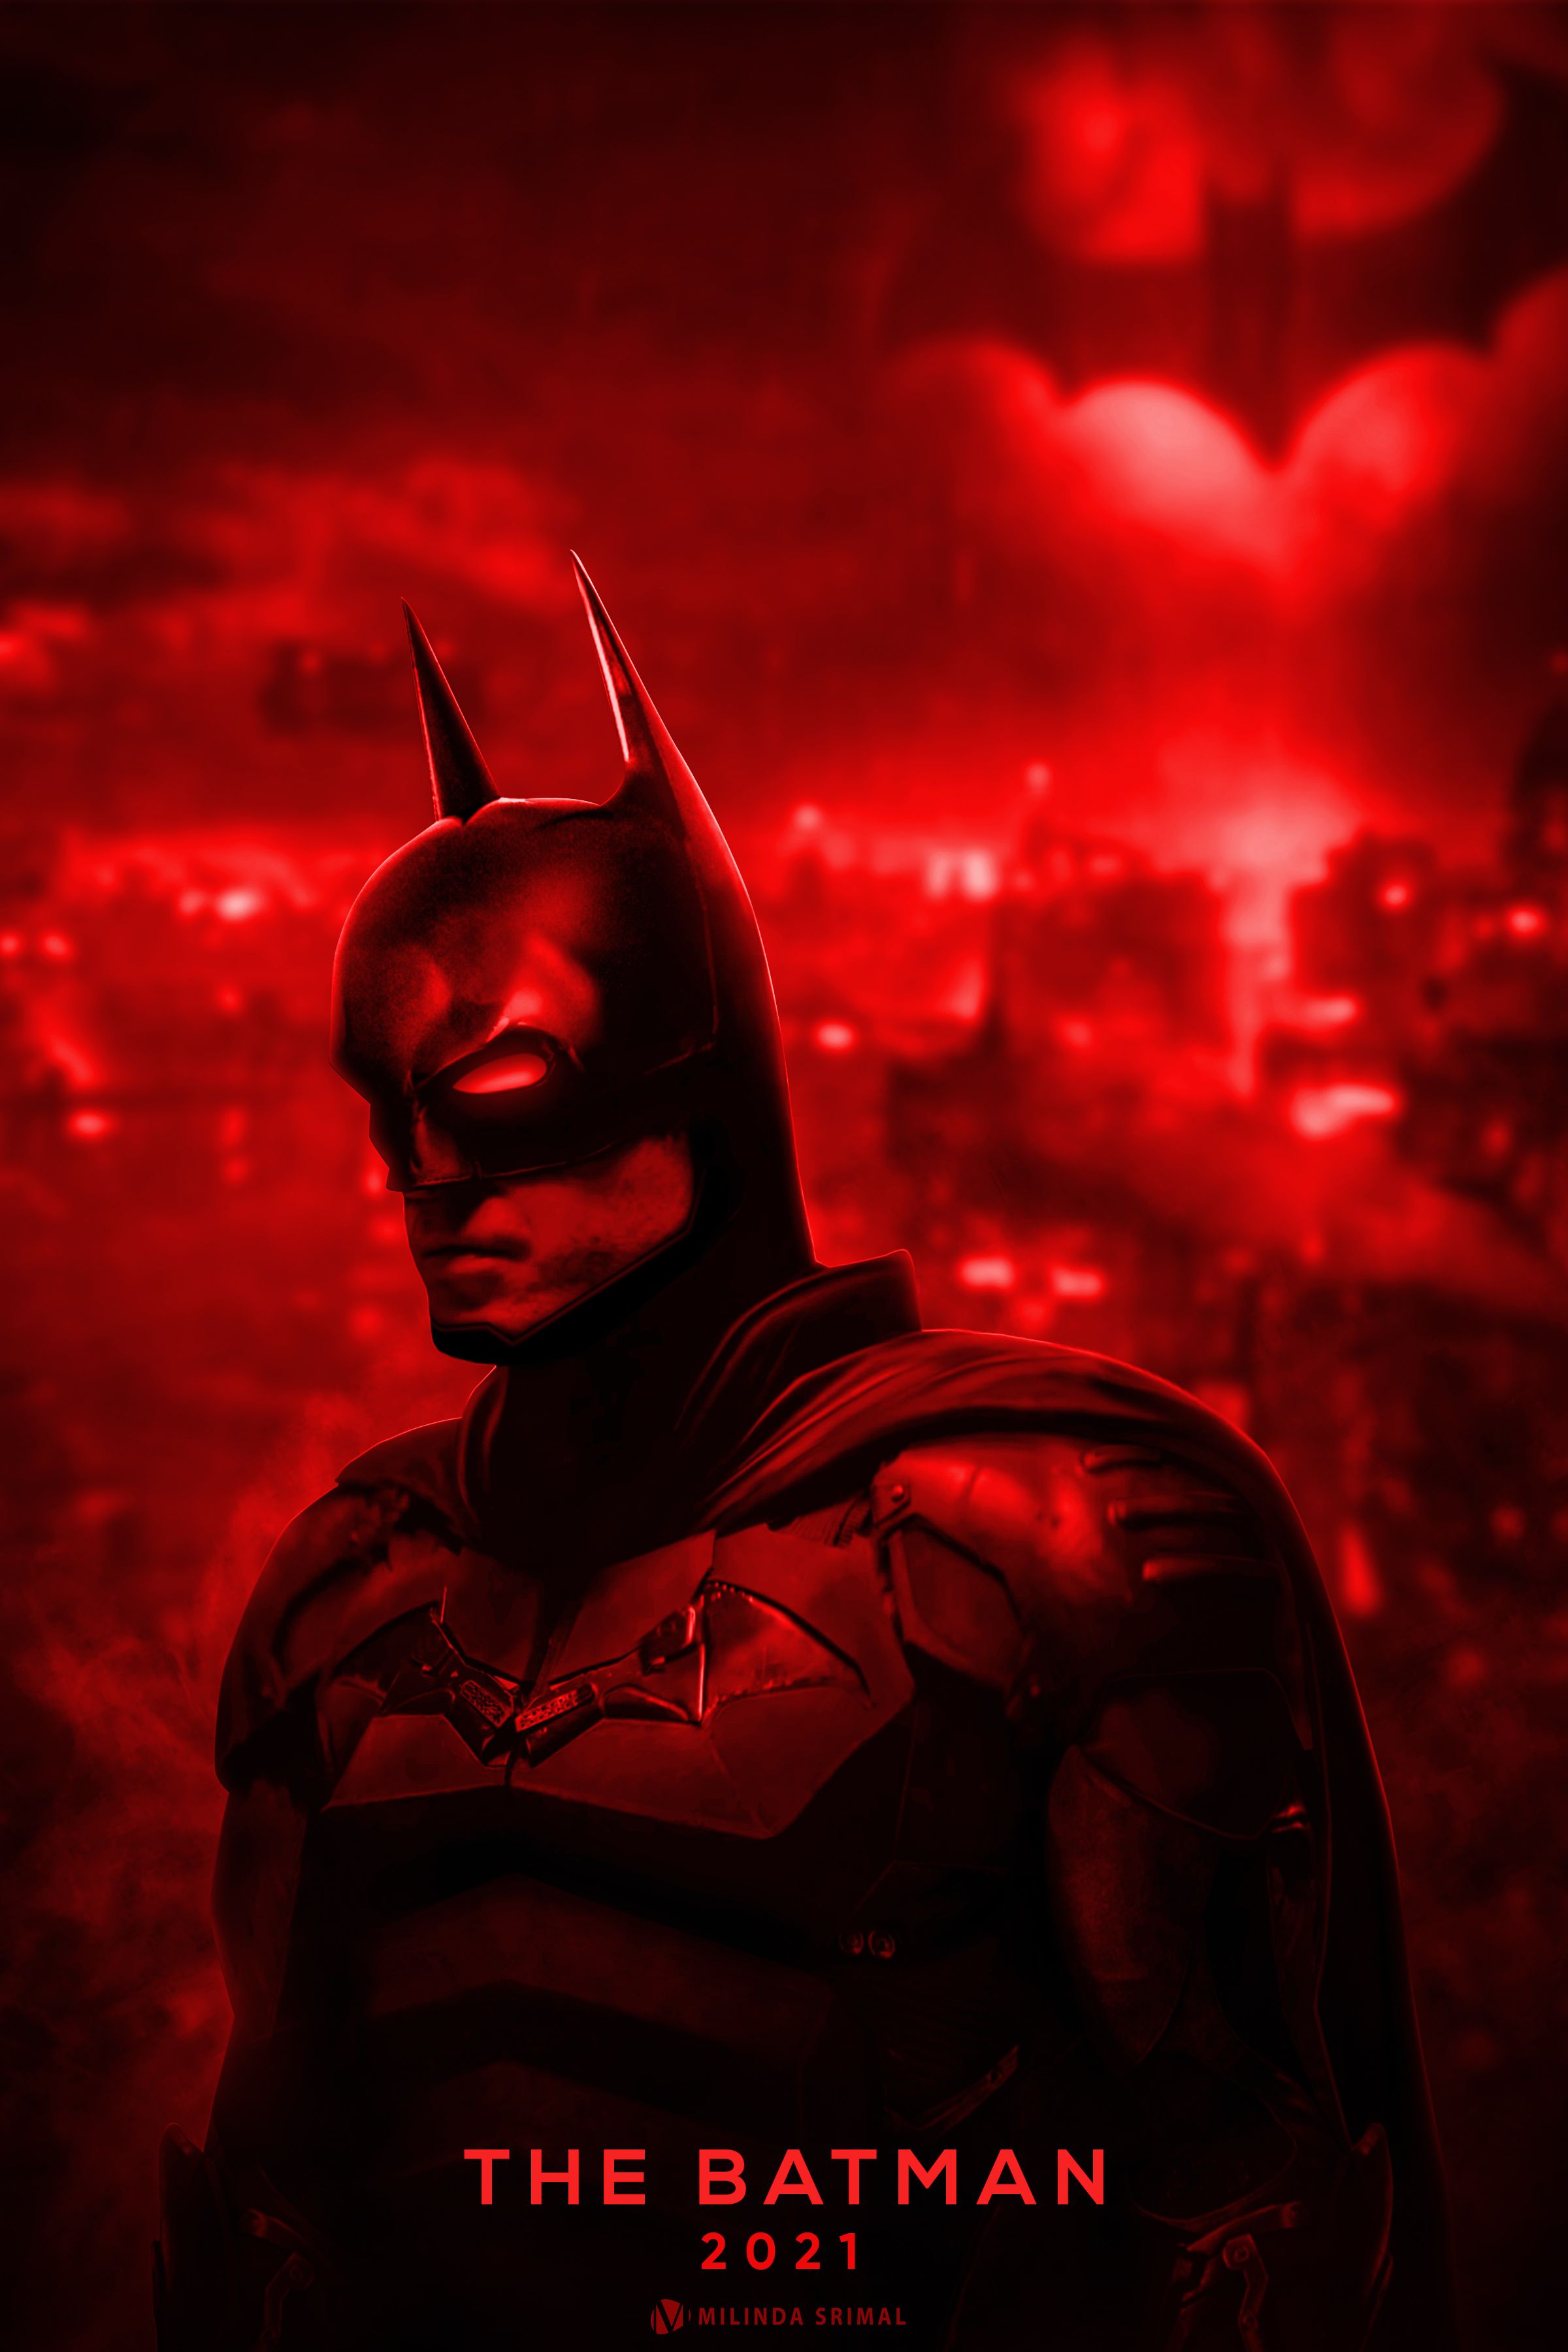 Robert Pattinsons The batman 2021. Batman, Movie posters, Dark knight